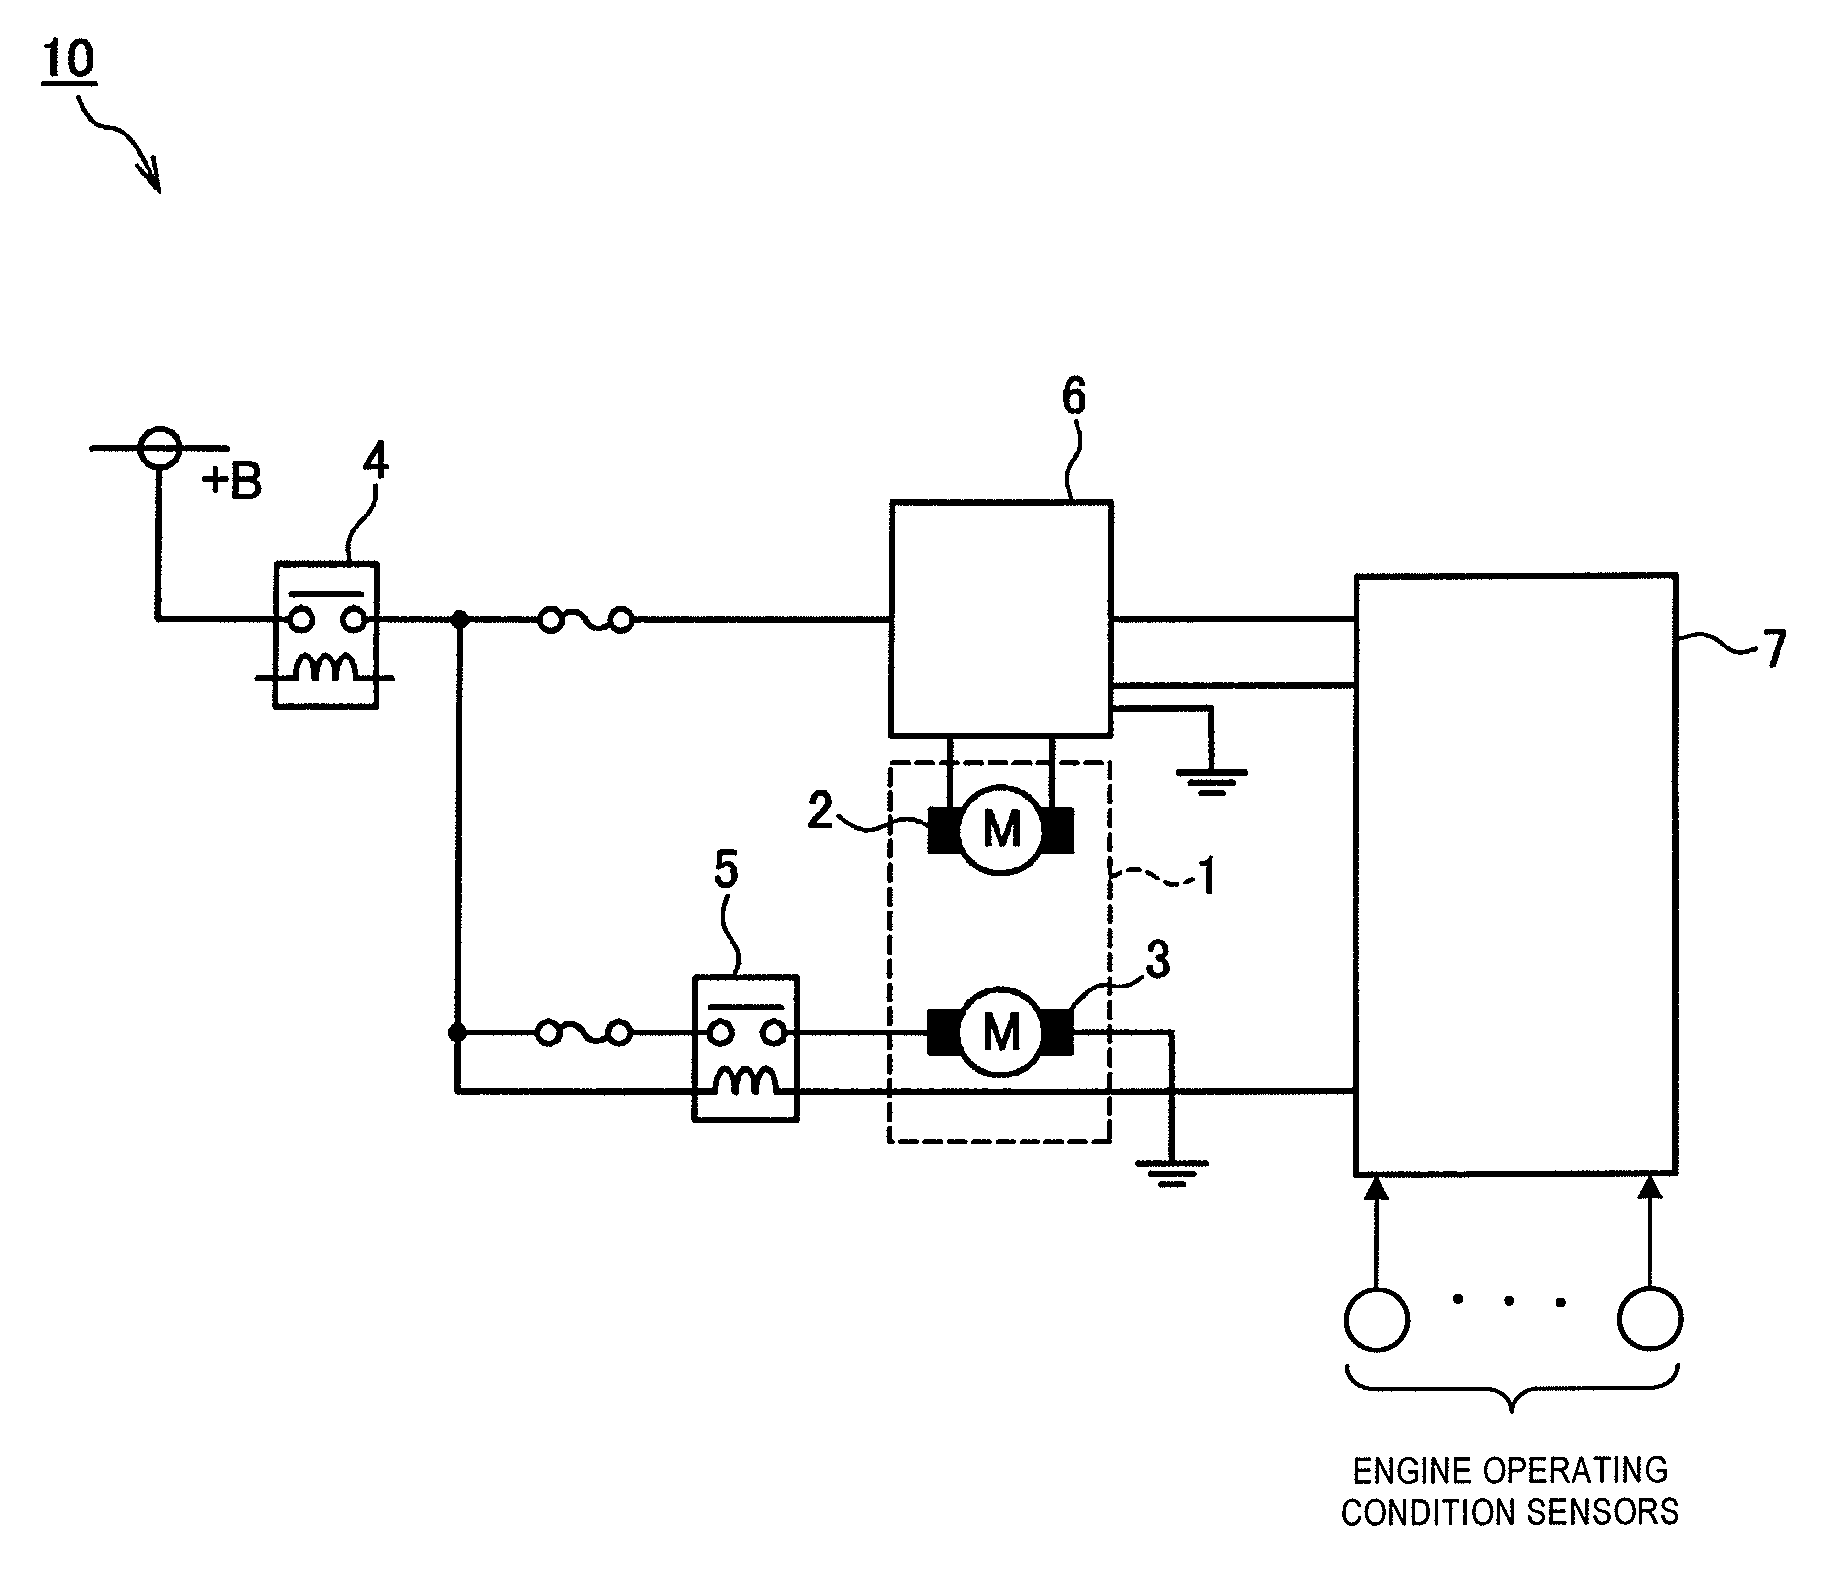 Engine fuel pump control apparatus